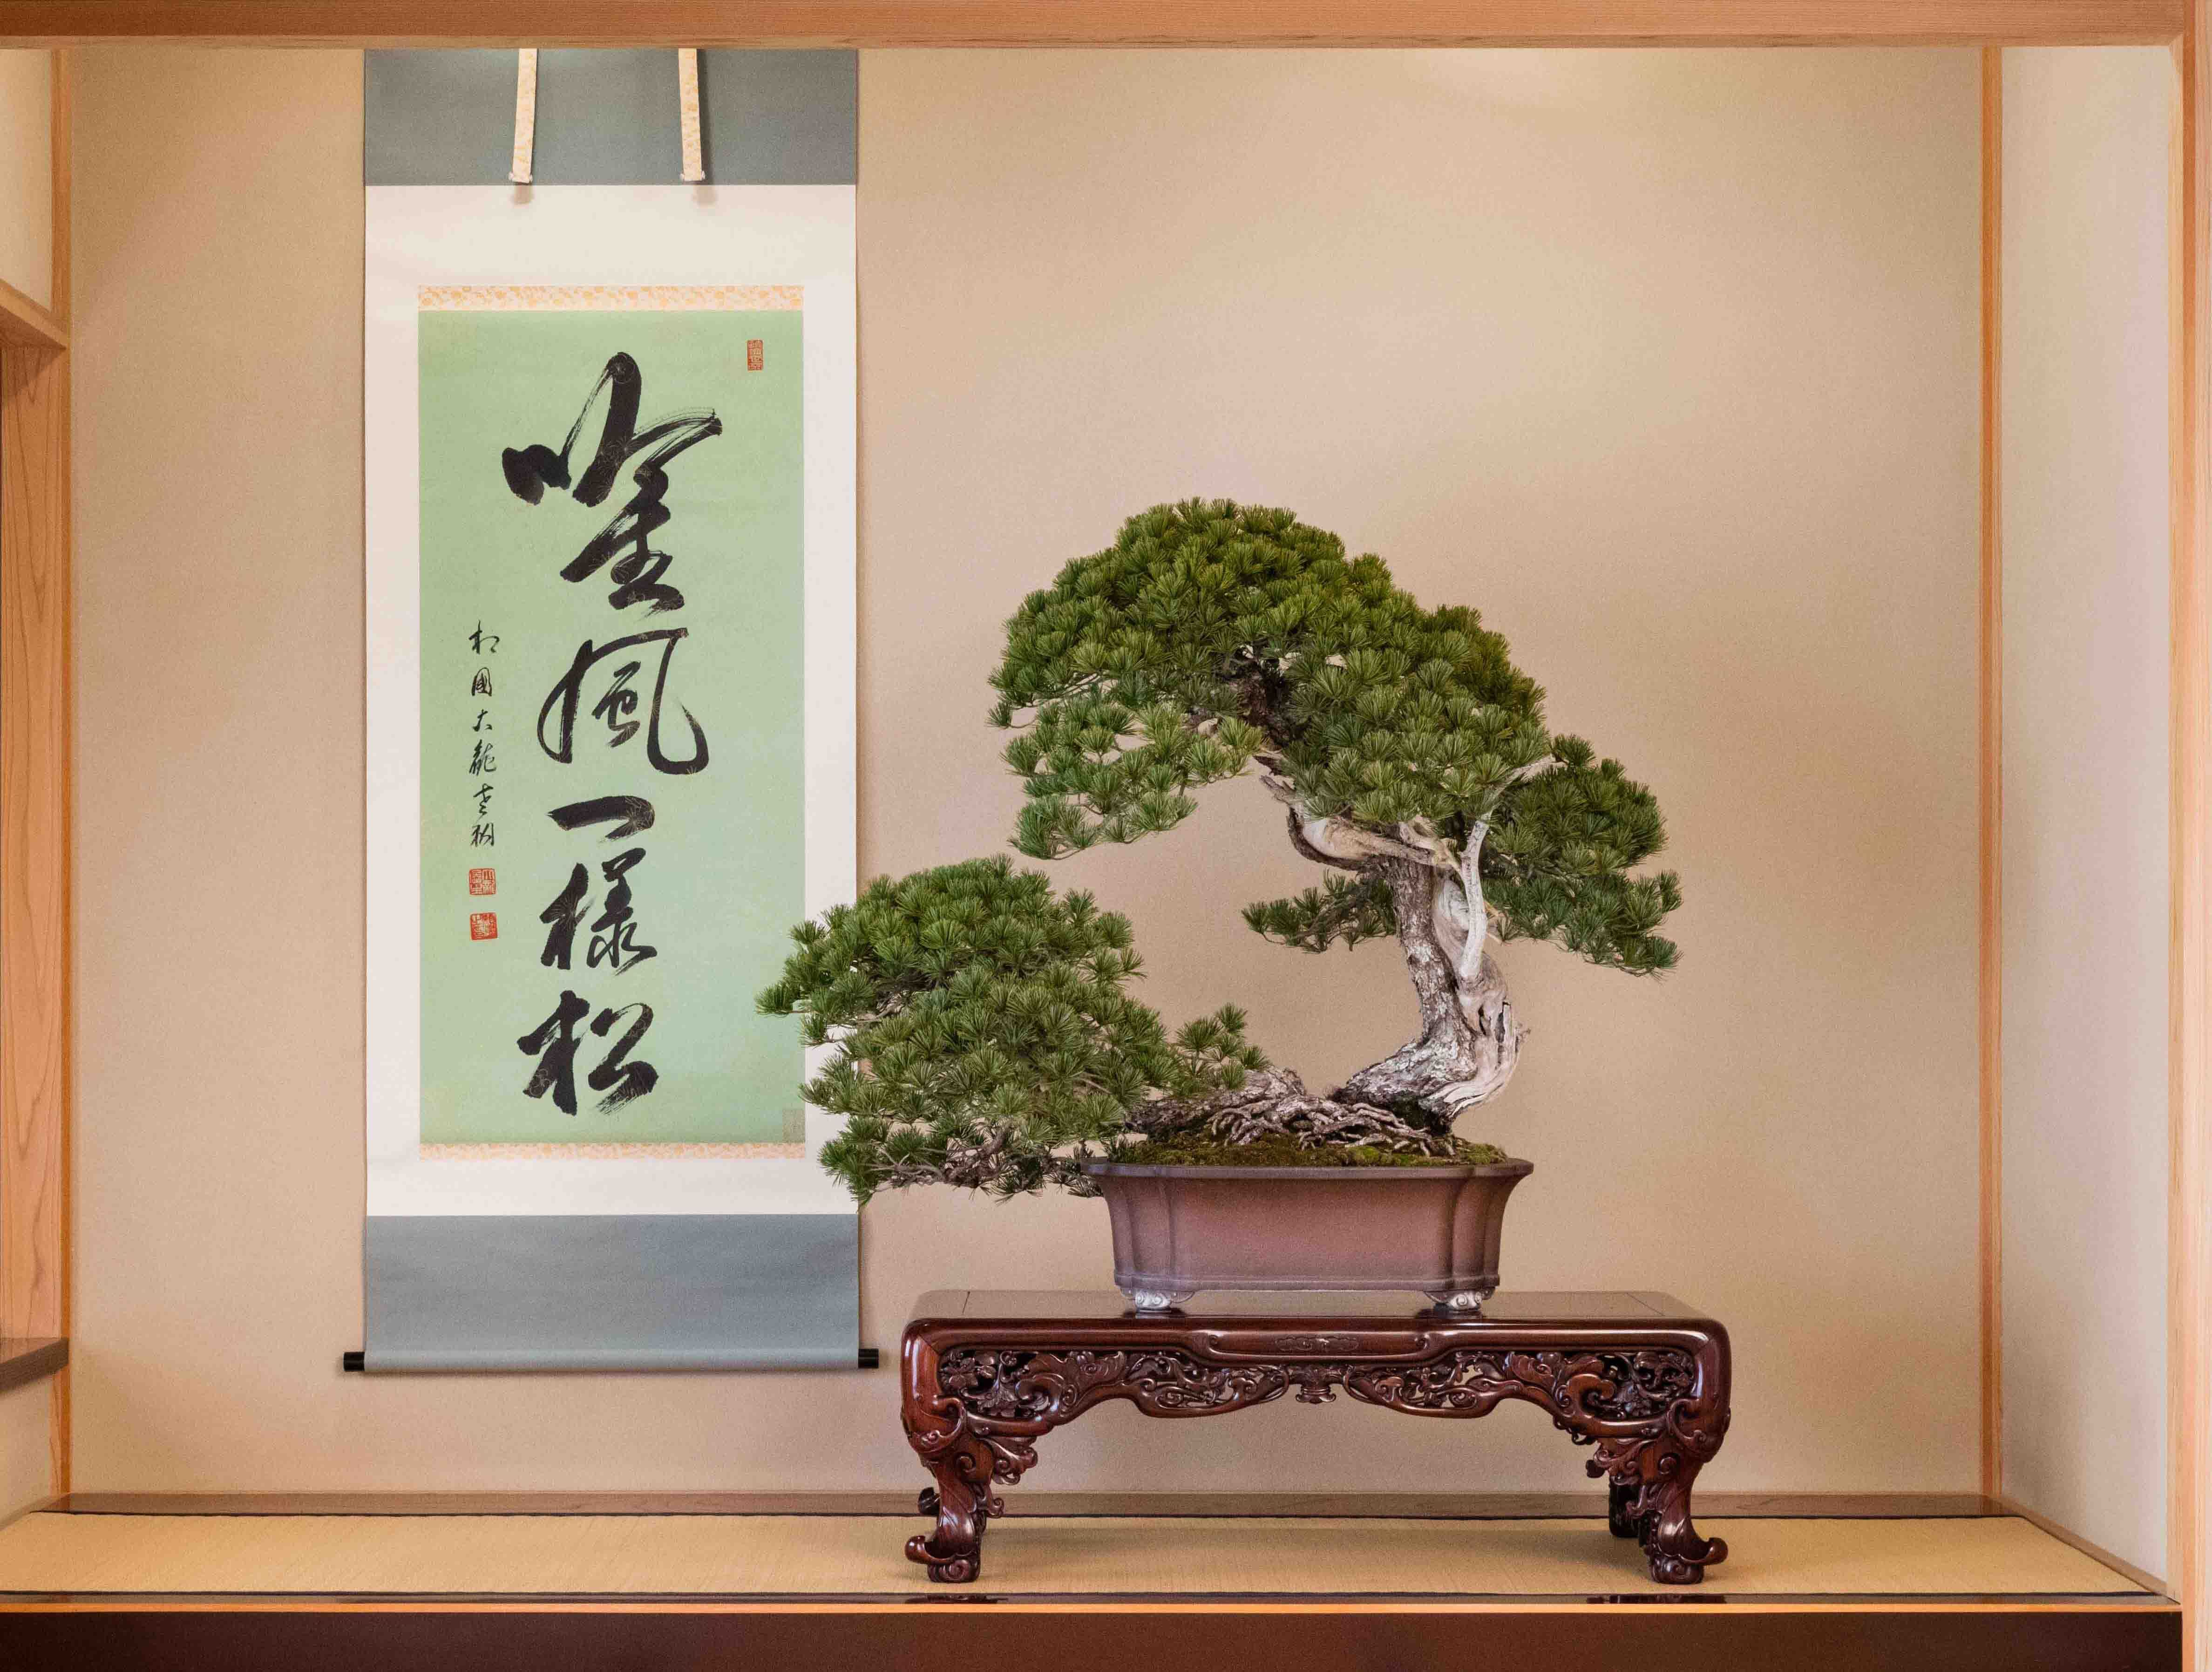 第8回世界盆栽大会inさいたま 1ヶ月前イベントを東京スカイツリーで3月18日 19日に開催 第8回世界盆栽大会inさいたま実行委員会のプレスリリース